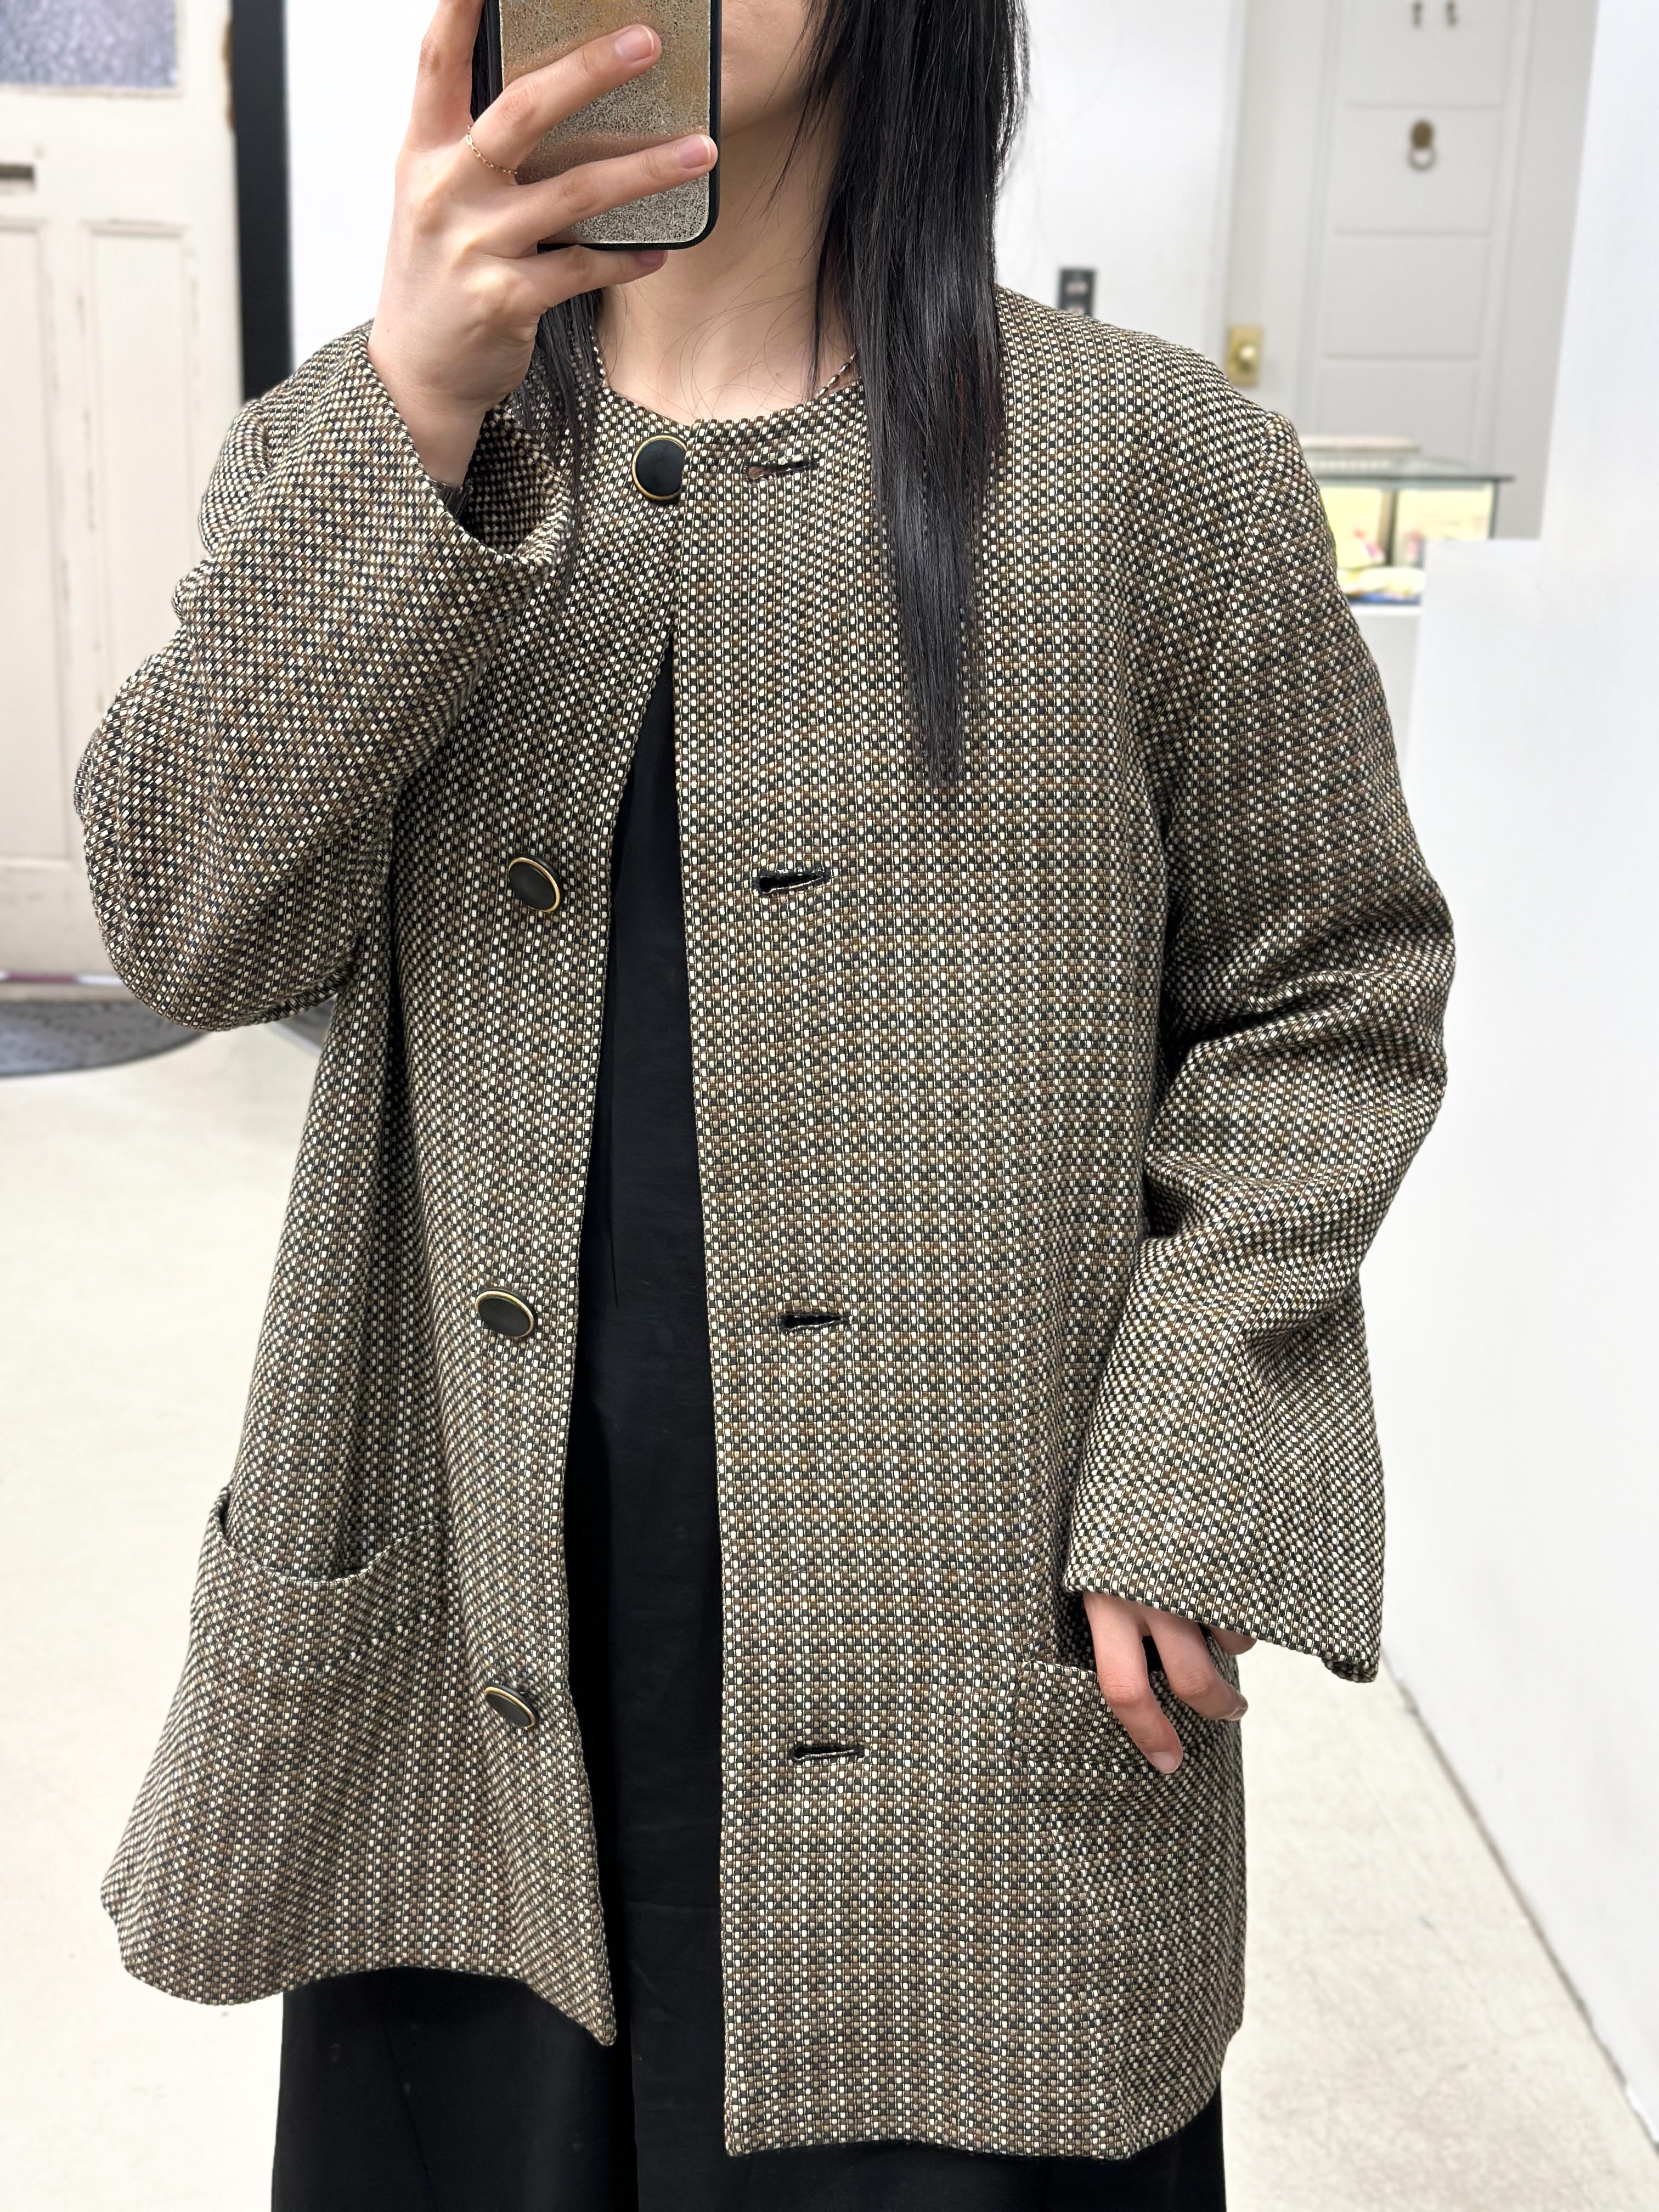 Dior summer tweed jacket